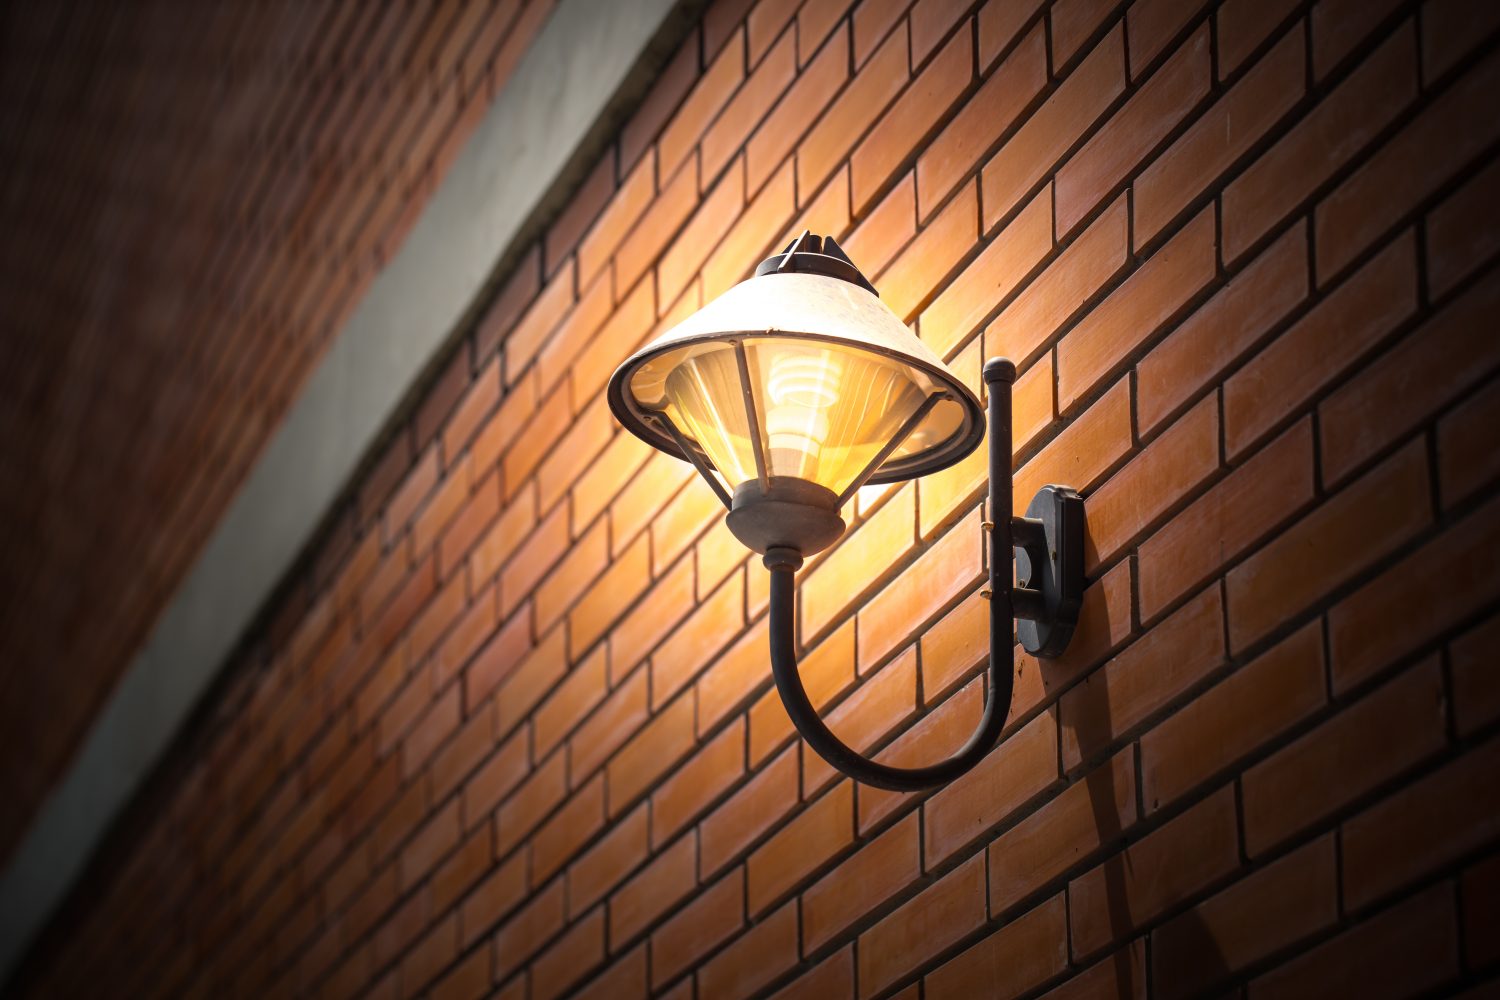 Oblíbený „vintage“ styl a design, který lampu tohoto typu chrání před deštěm, je i pro chalupy dobré řešení